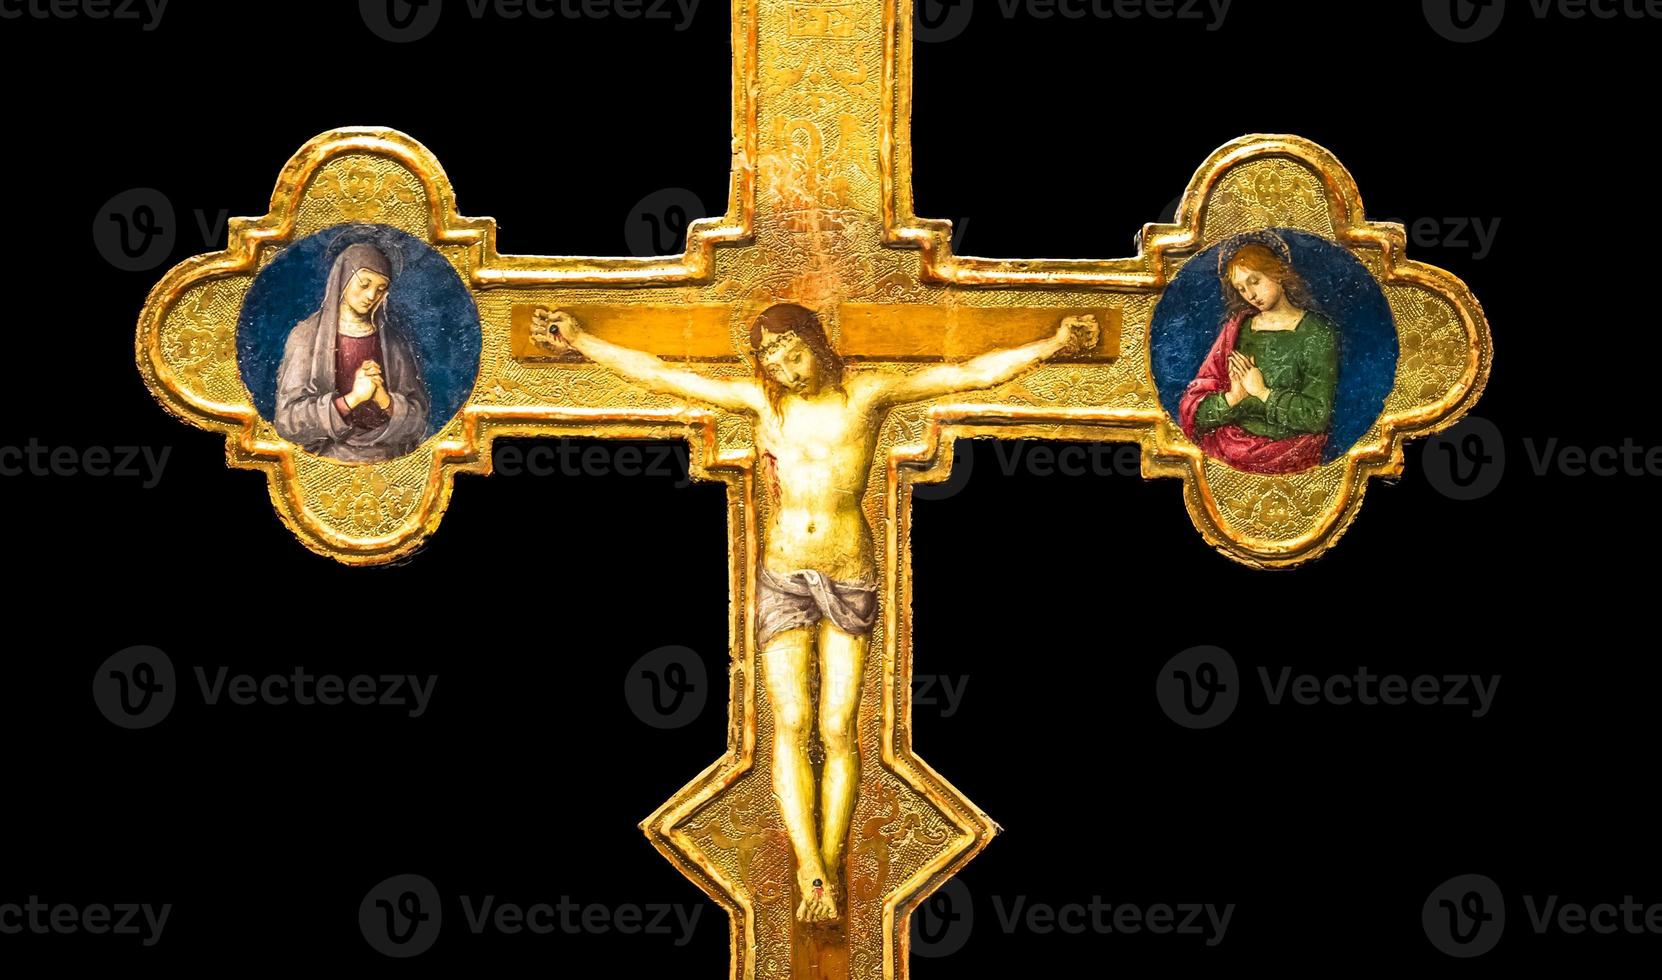 crucifix antique en or - église catholique romaine, jésus christ. photo